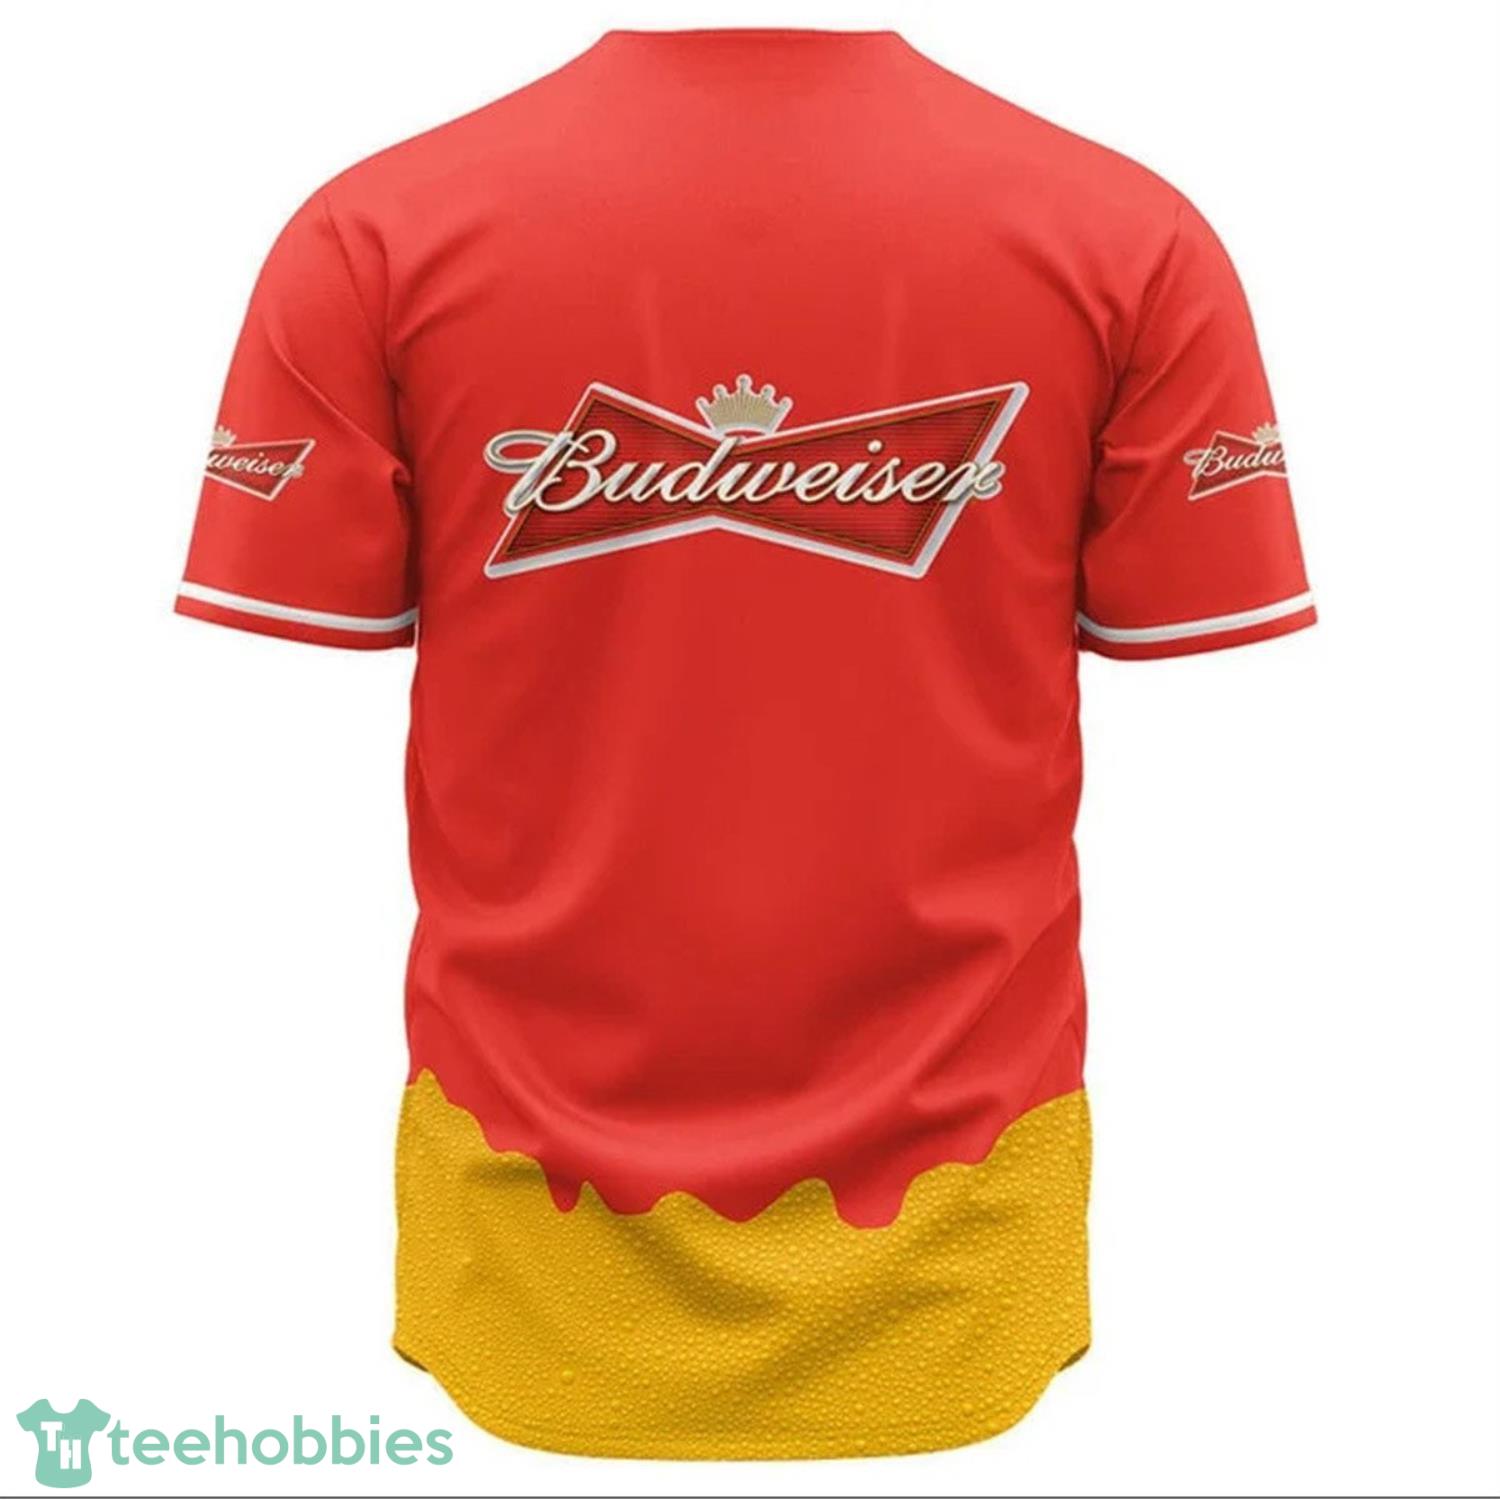 Personalized Budweiser Baseball Jersey TShirt Product Photo 1